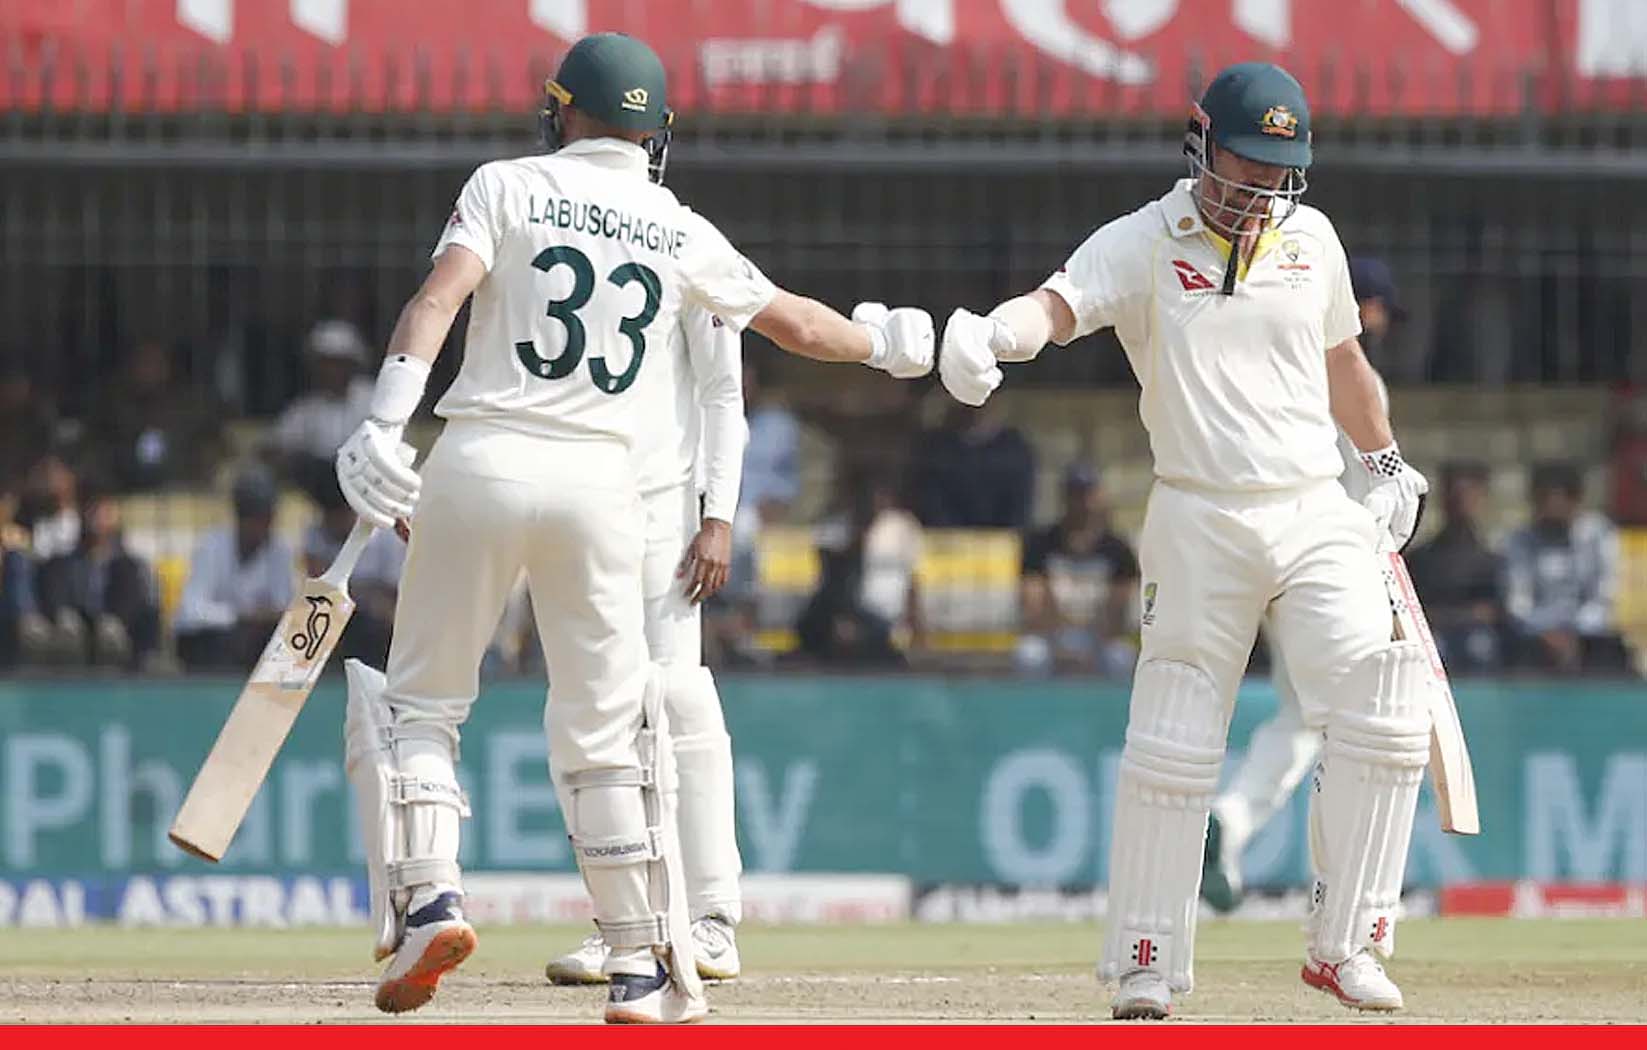 ऑस्ट्रेलिया ने तीसरे टेस्ट मैच में भारत को 9 विकेट से हराया, सवा 2 दिन में खत्म हुआ मैच